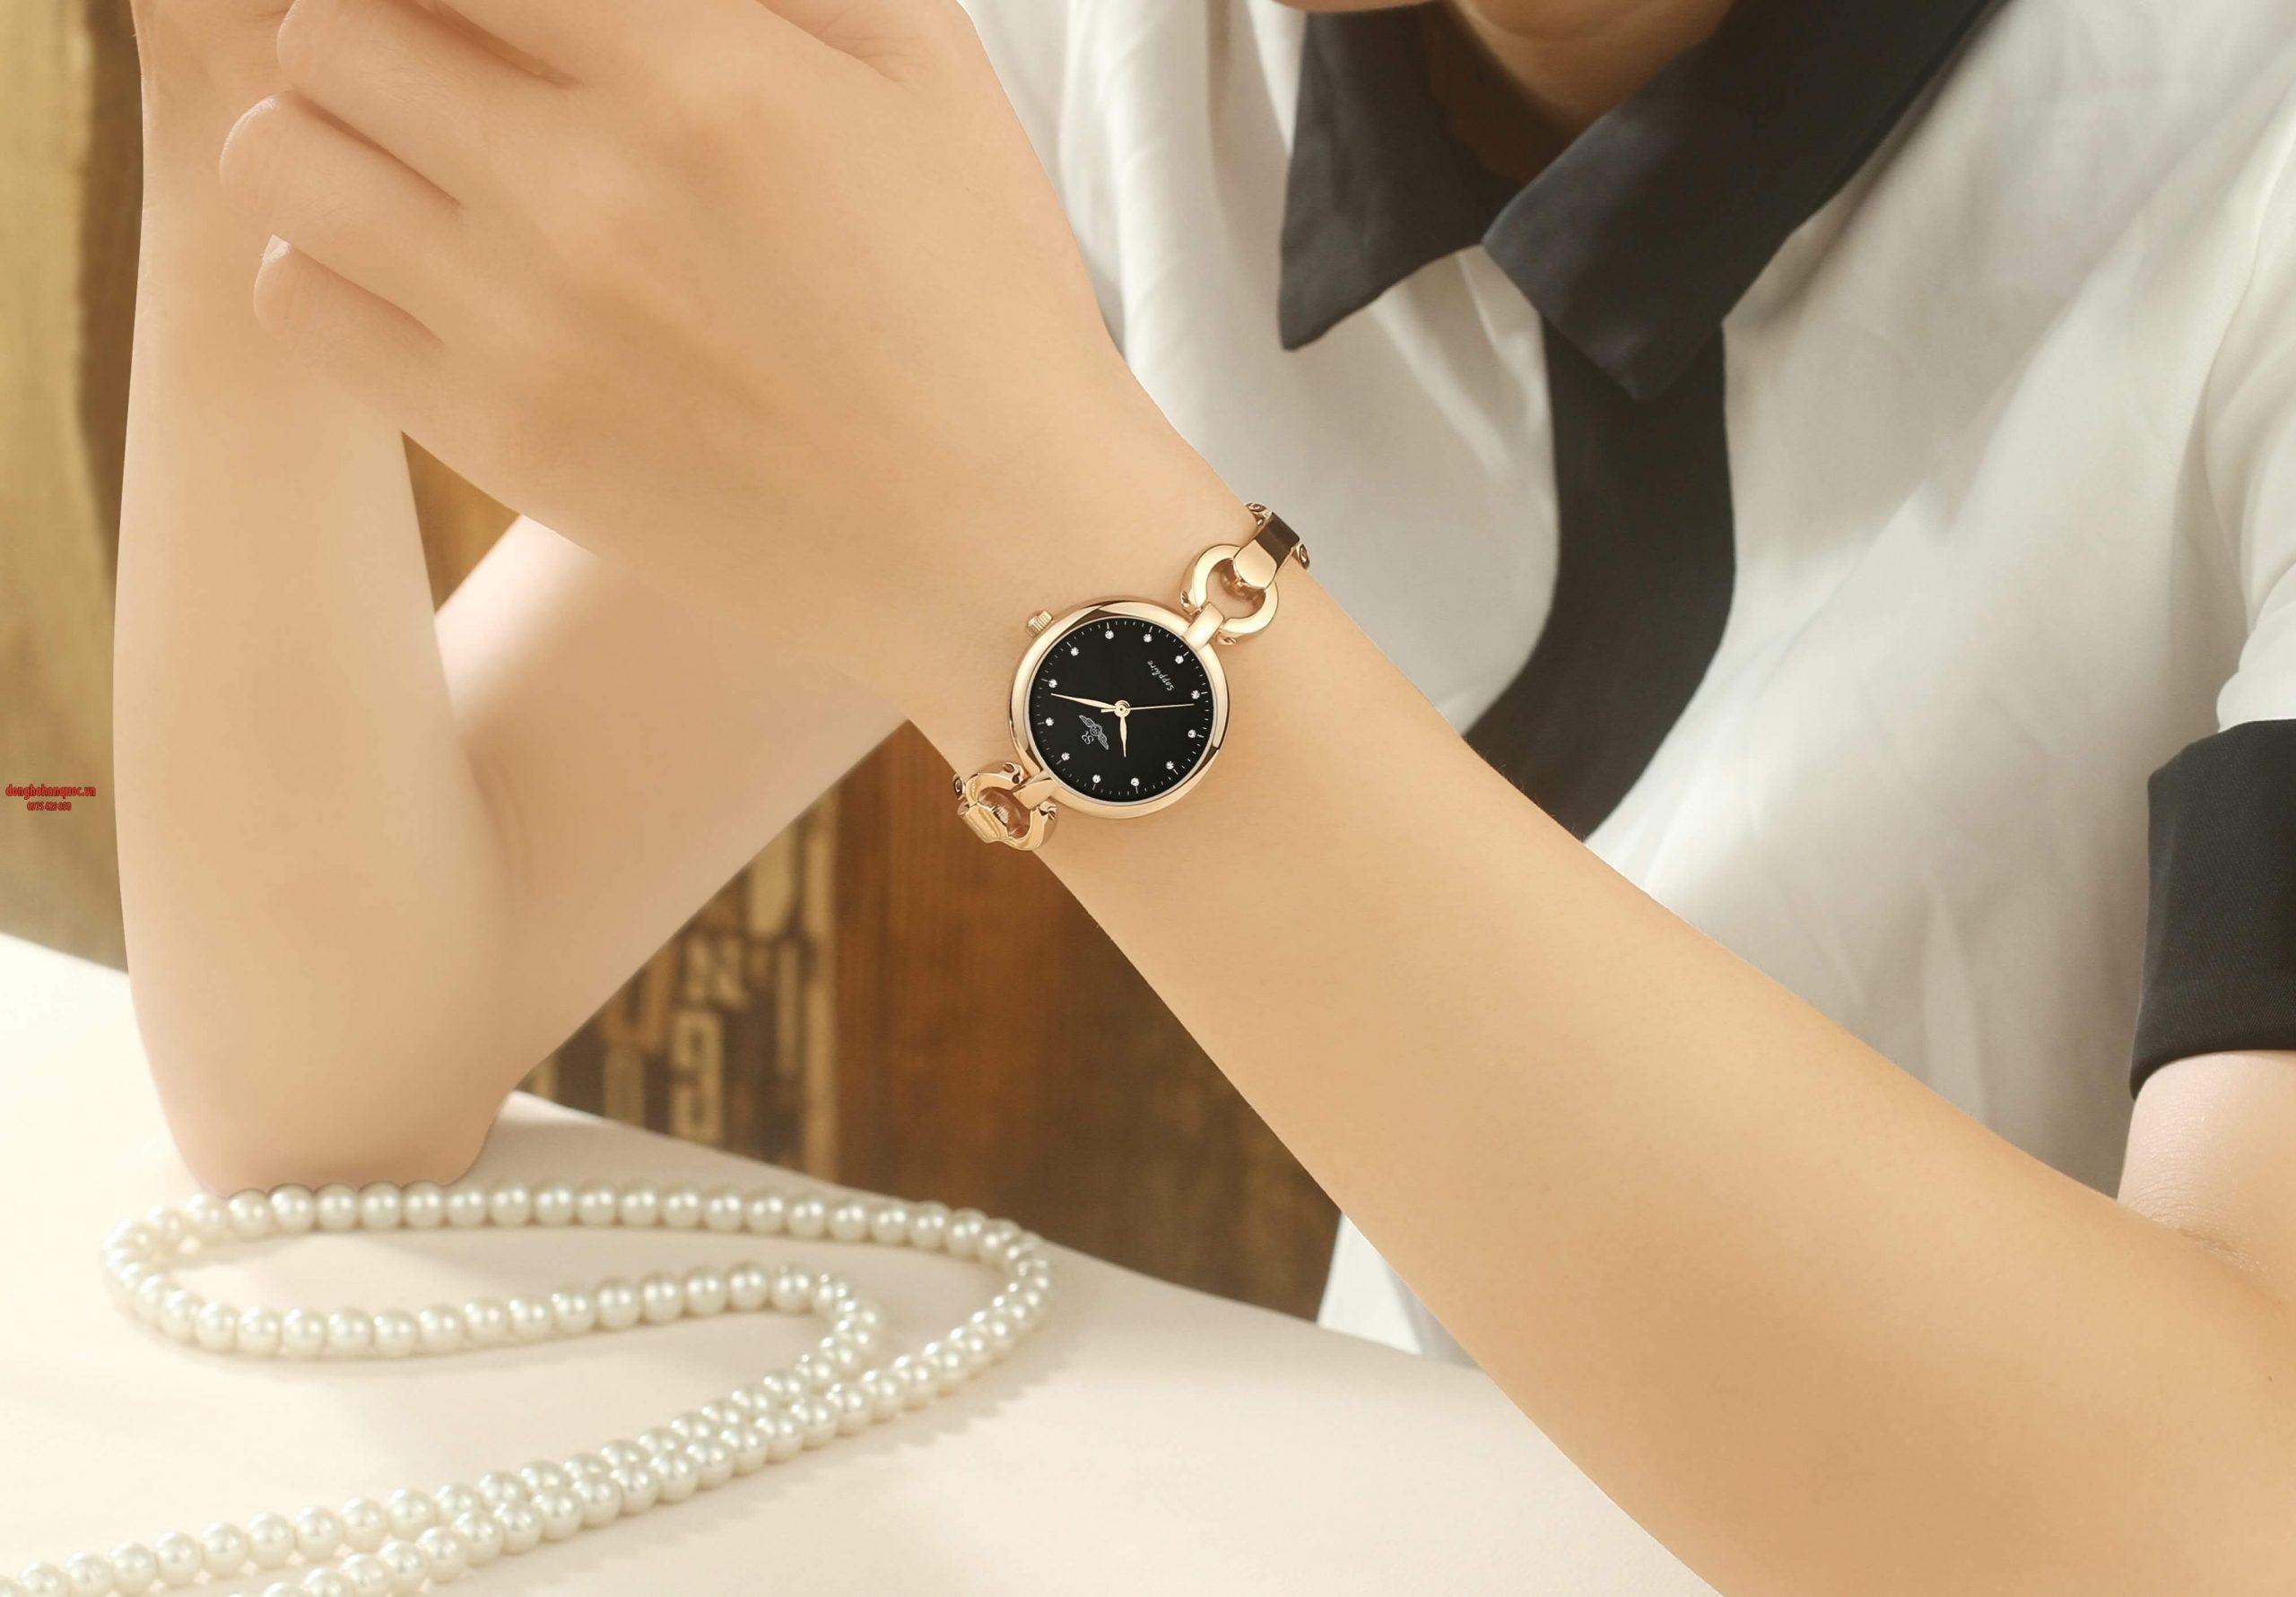 Đồng hồ Seiko chính hãng xuất xứ Nhật Bản